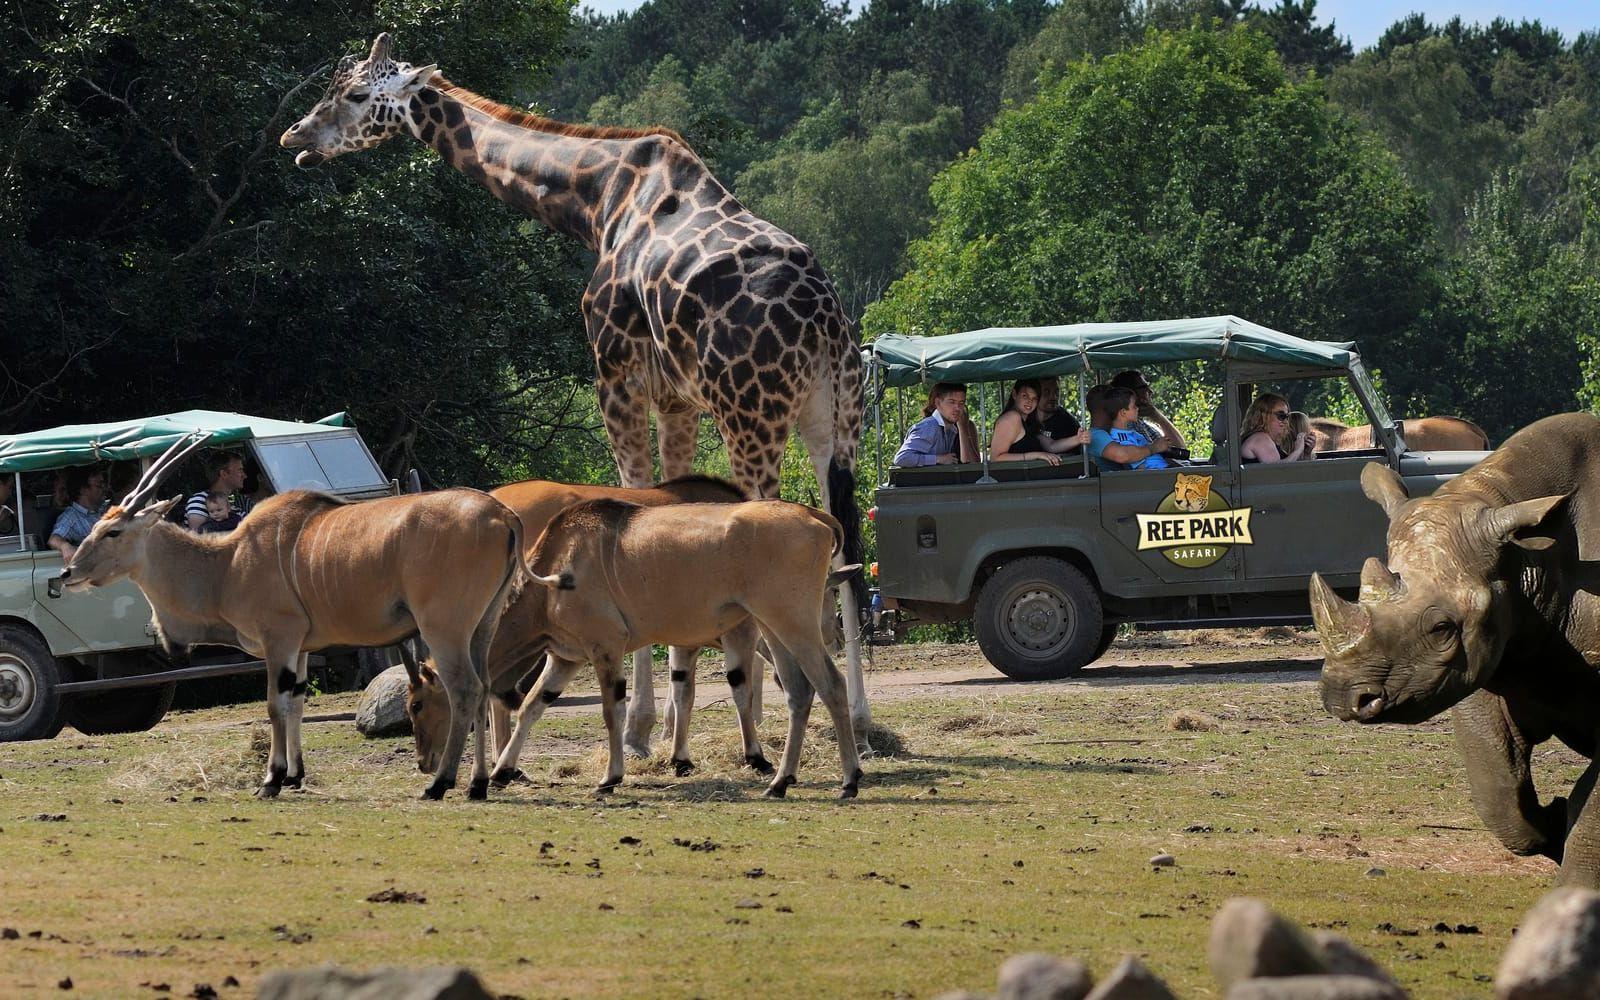 Ree Park Safari i Ebeltoft bjuder på ett spännande möte med häftiga djur.